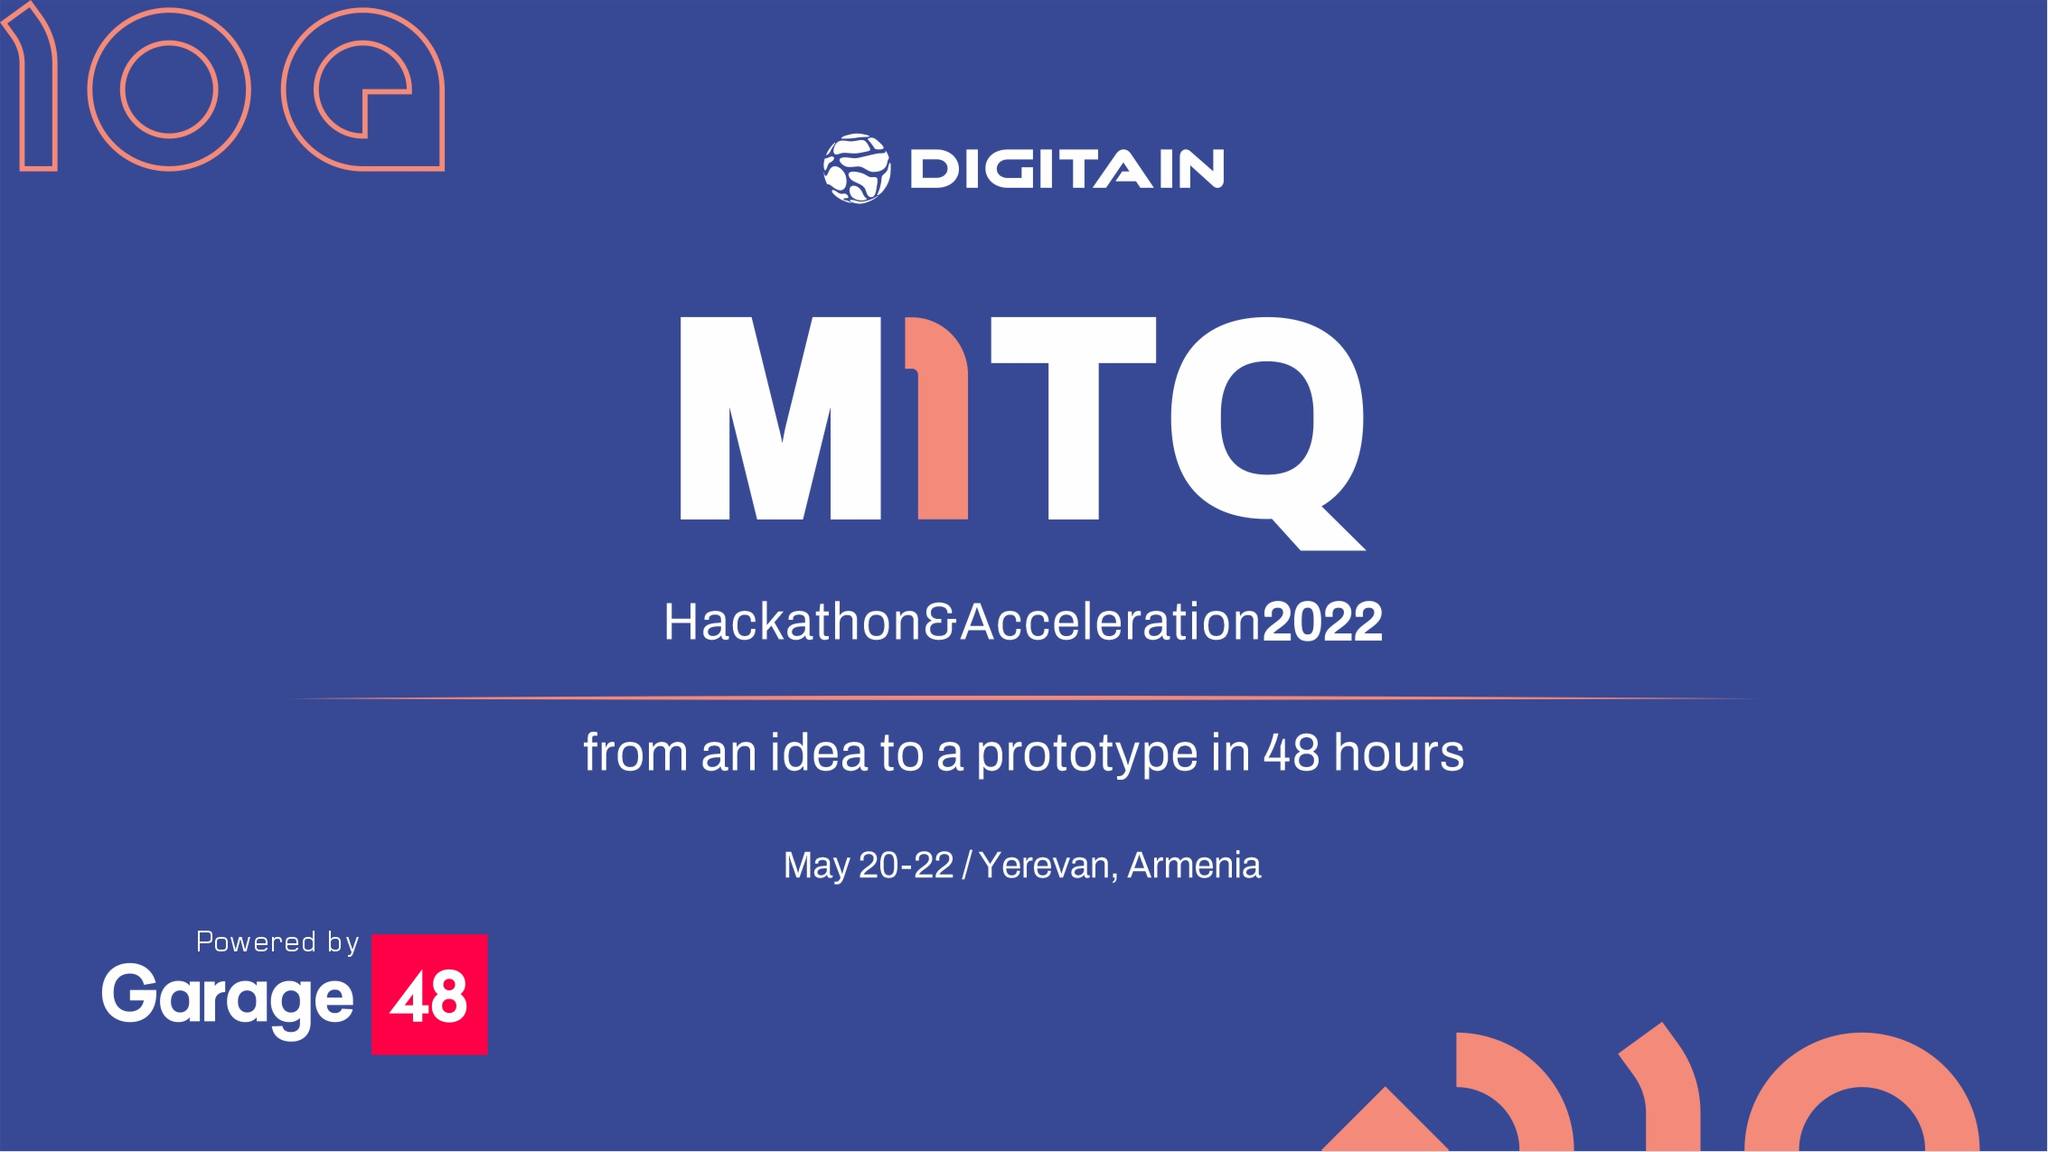 M1TQ Hackathon & Acceleration